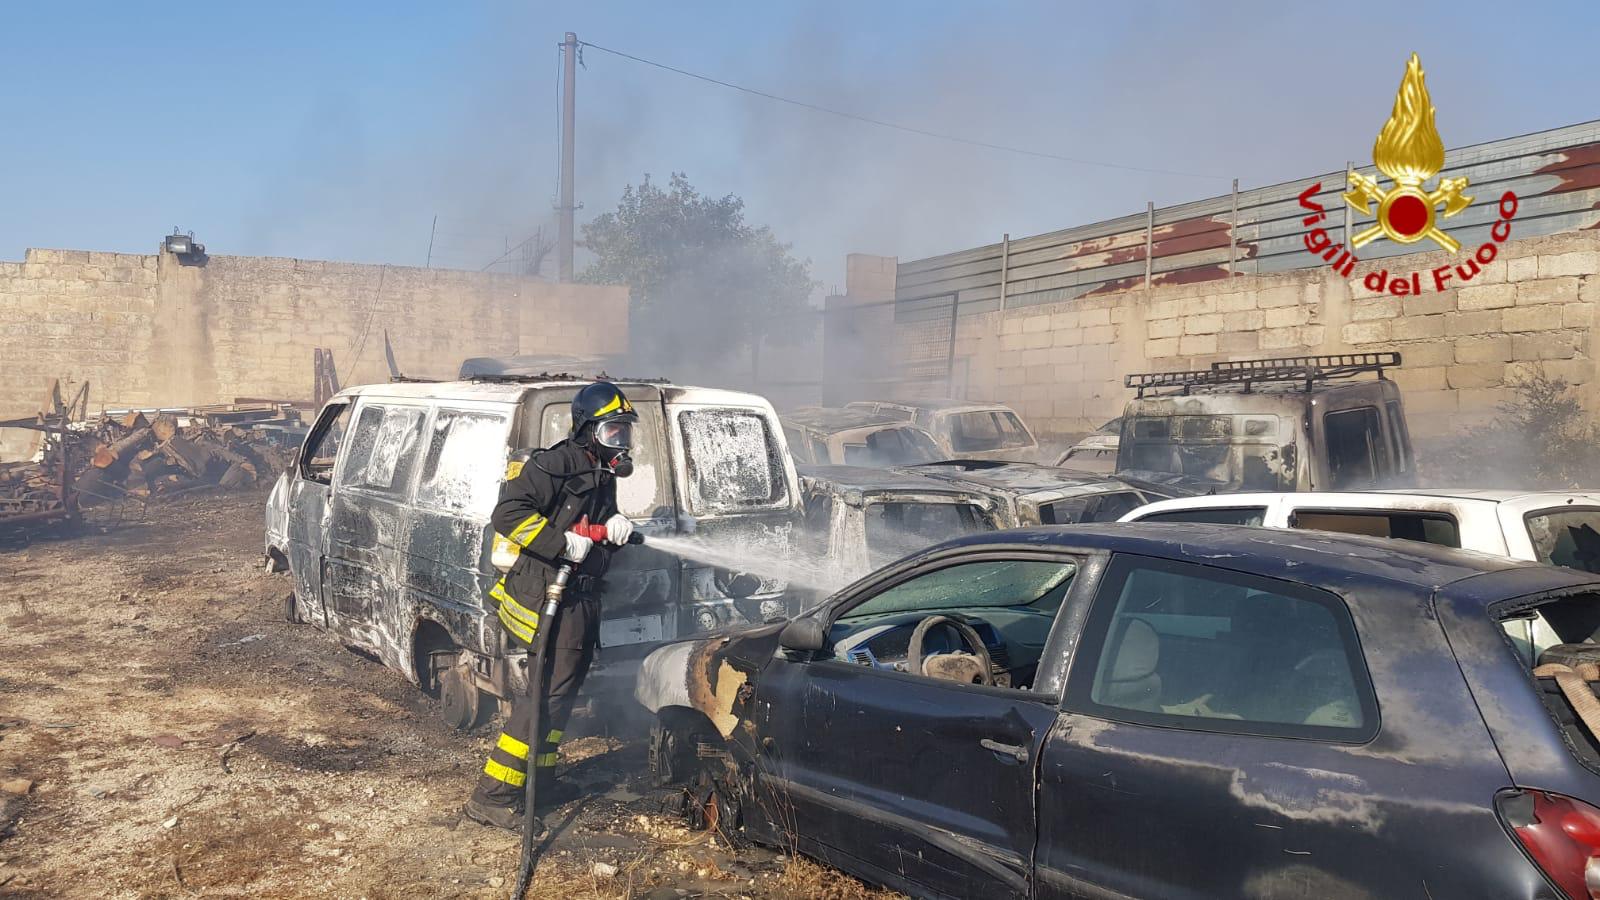 Inferno di fuoco a Rosolini, bruciano auto sotto sequestro (LE FOTO)